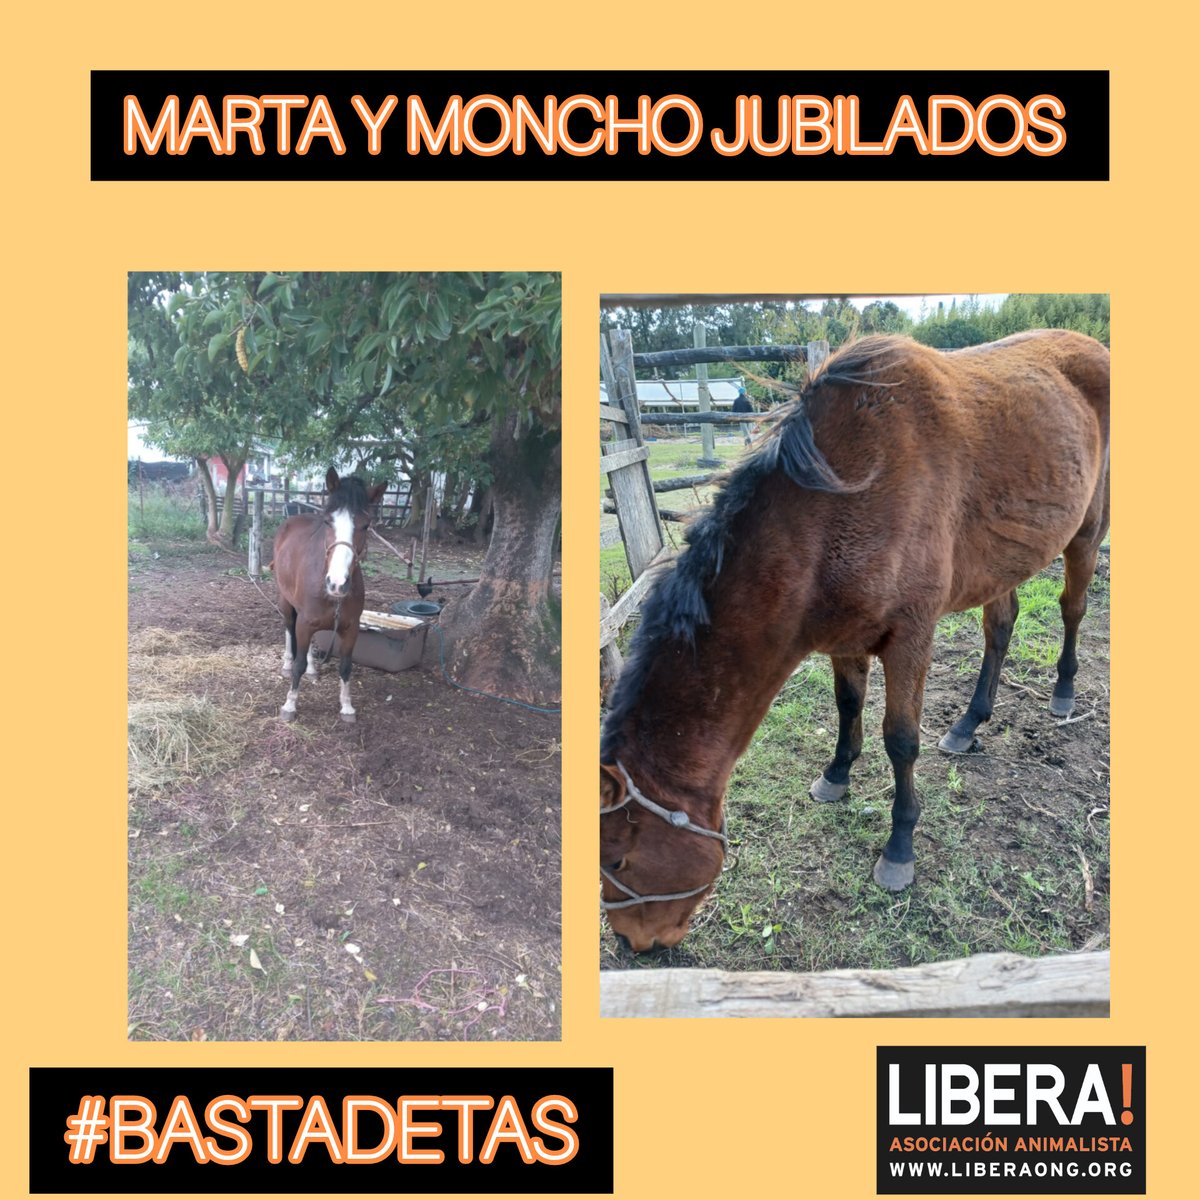 Marta y Moncho ya no tiran más de un carro, se jubilaron gracias al proyecto de sustitución de la campaña @TasBasta llevada adelante por @montevideoIM